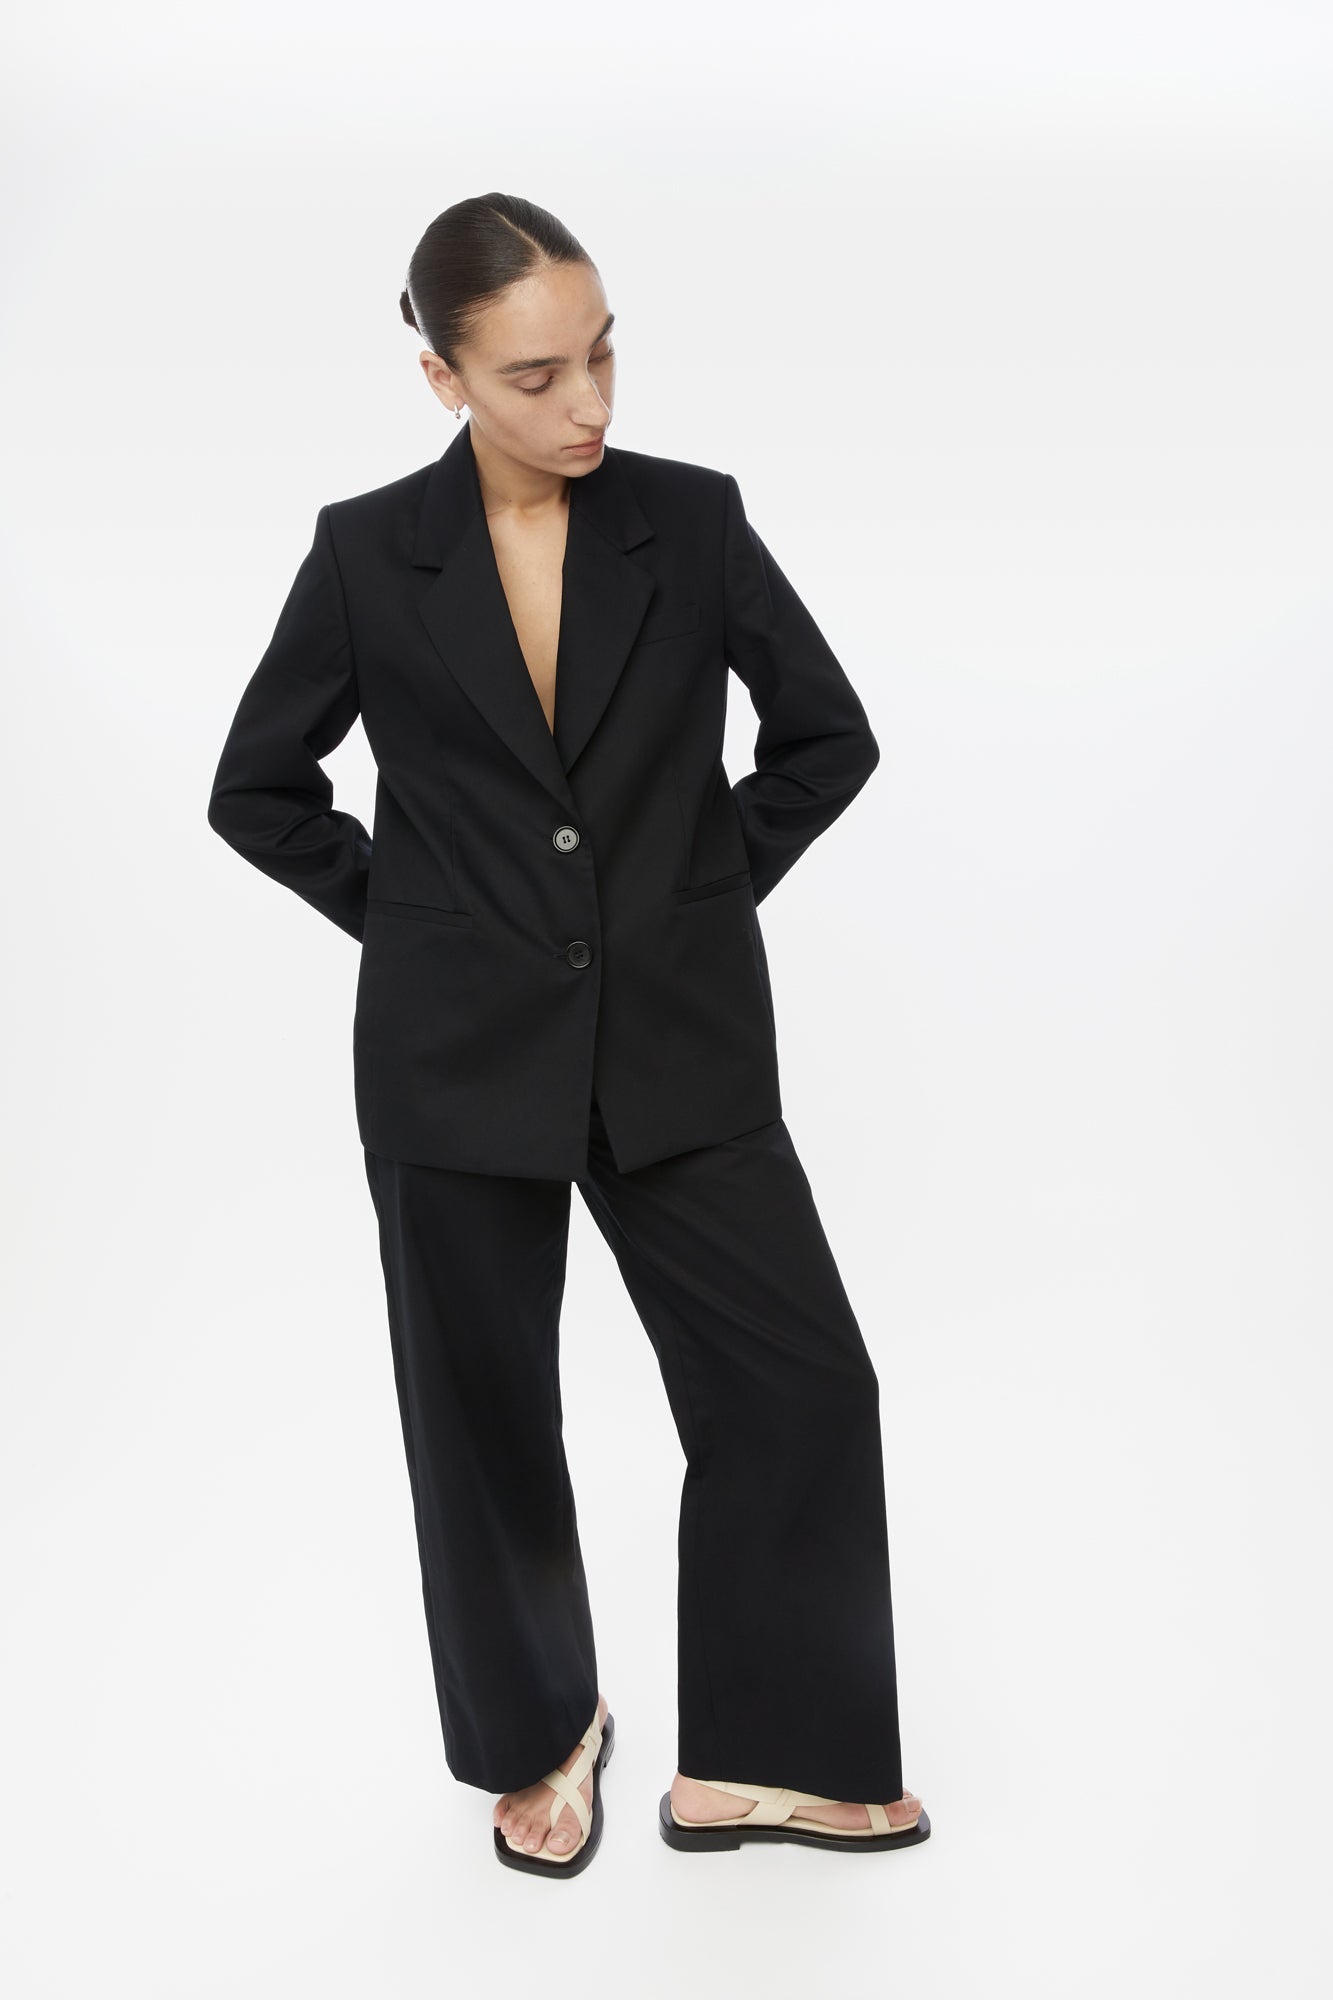 Women's Black Twill Suit